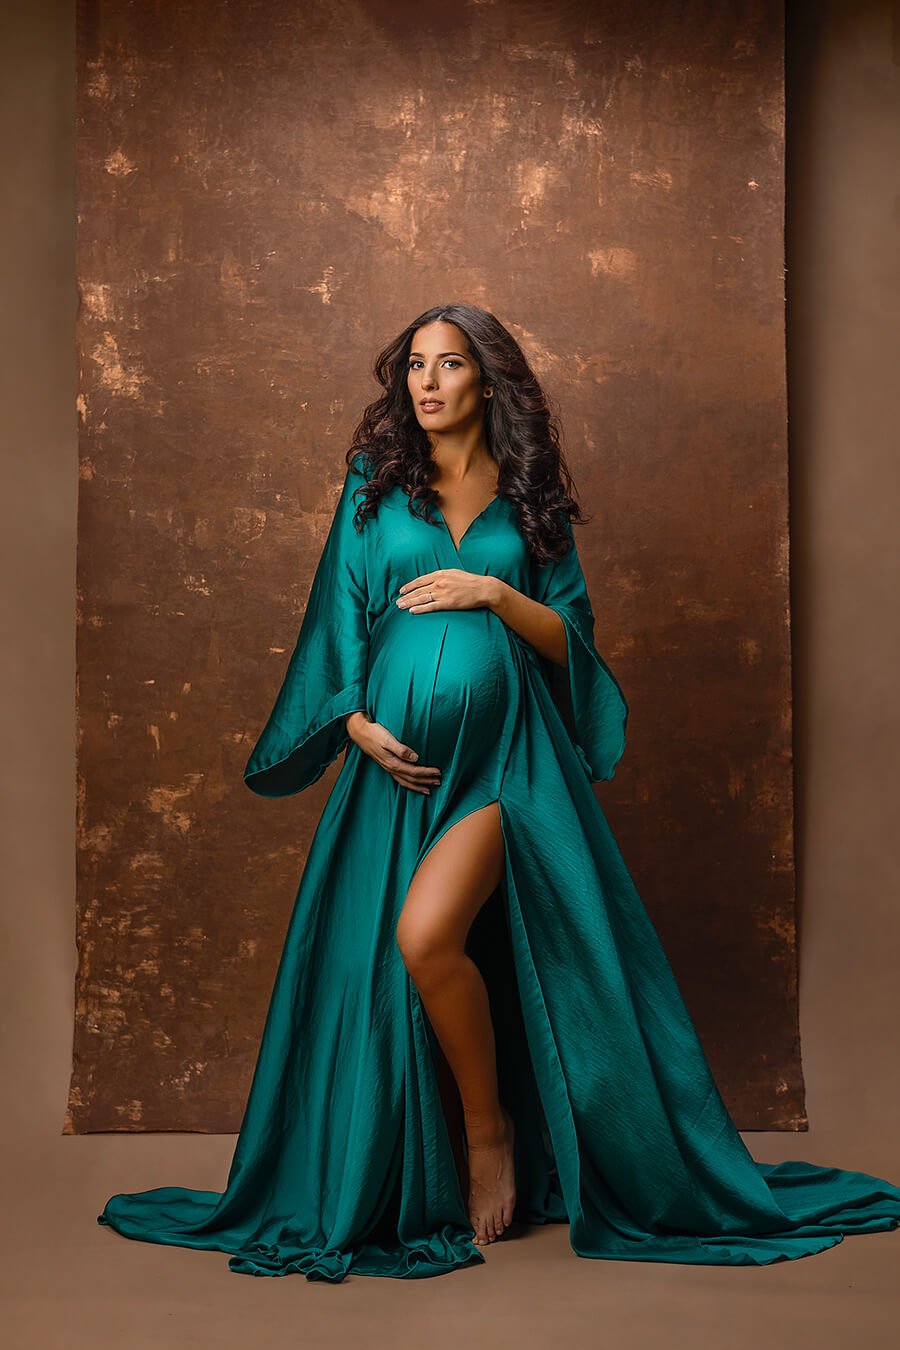 Used Maternity Photoshoot Dress